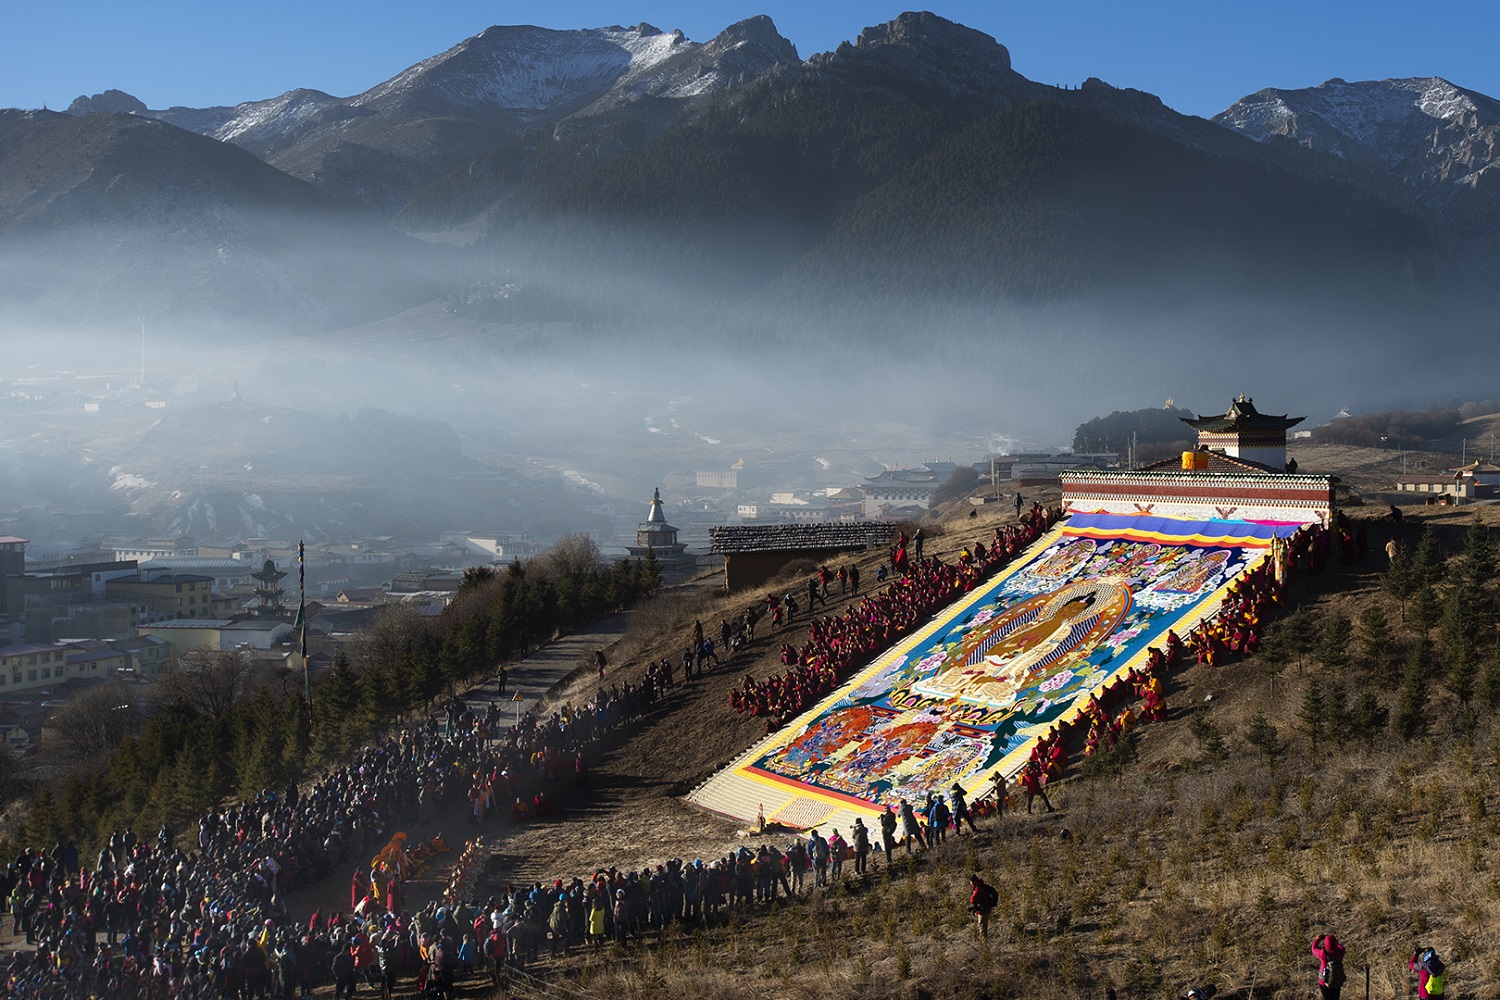 lễ hội shoton – trải nghiệm văn hóa tây tạng